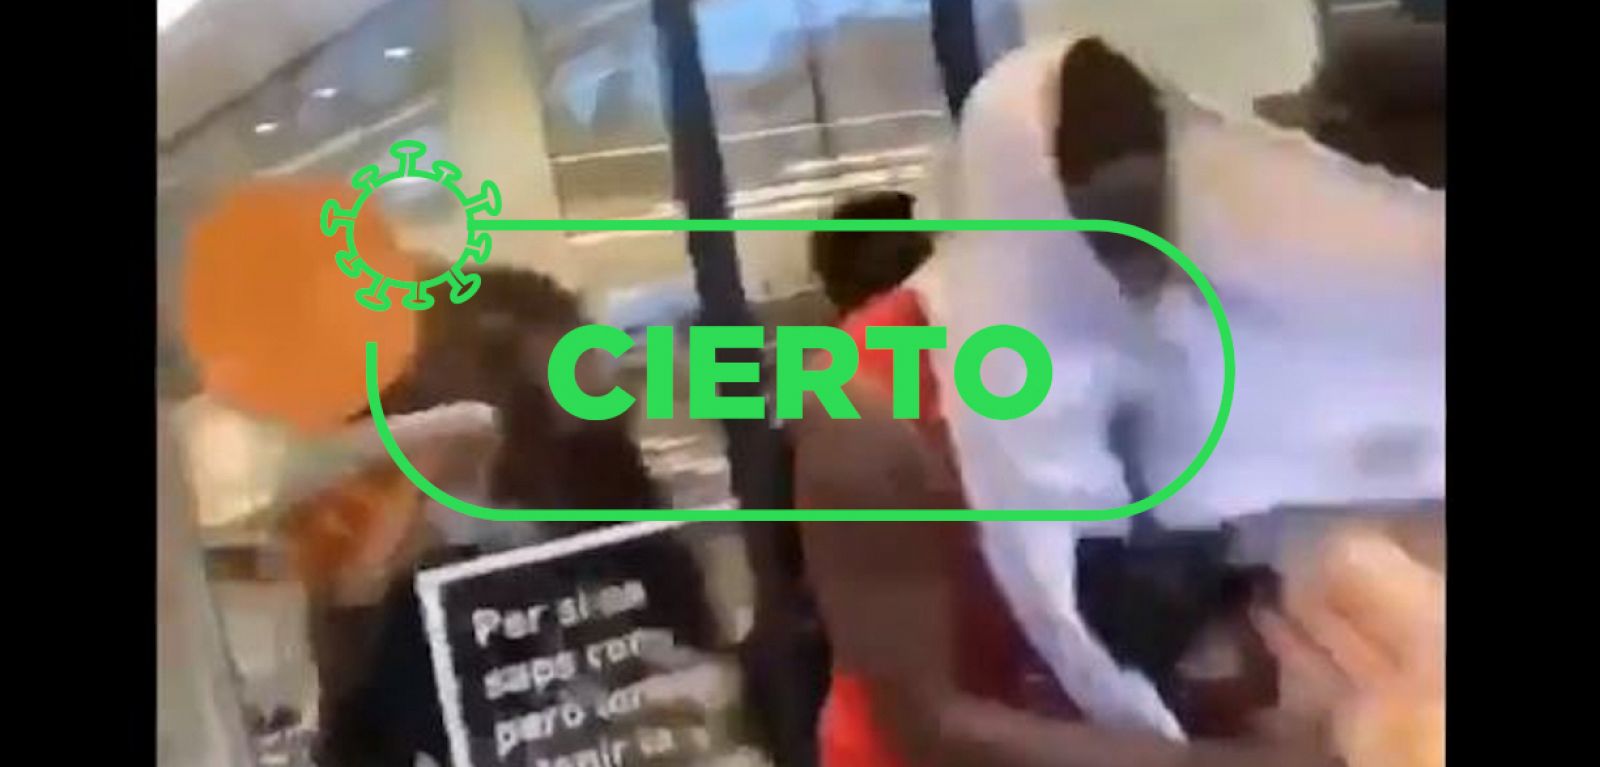 Captura del vídeo en el que un grupo de jóvenes africanos asalta un supermercado en Girona con la palabra "cierto" en color verde.